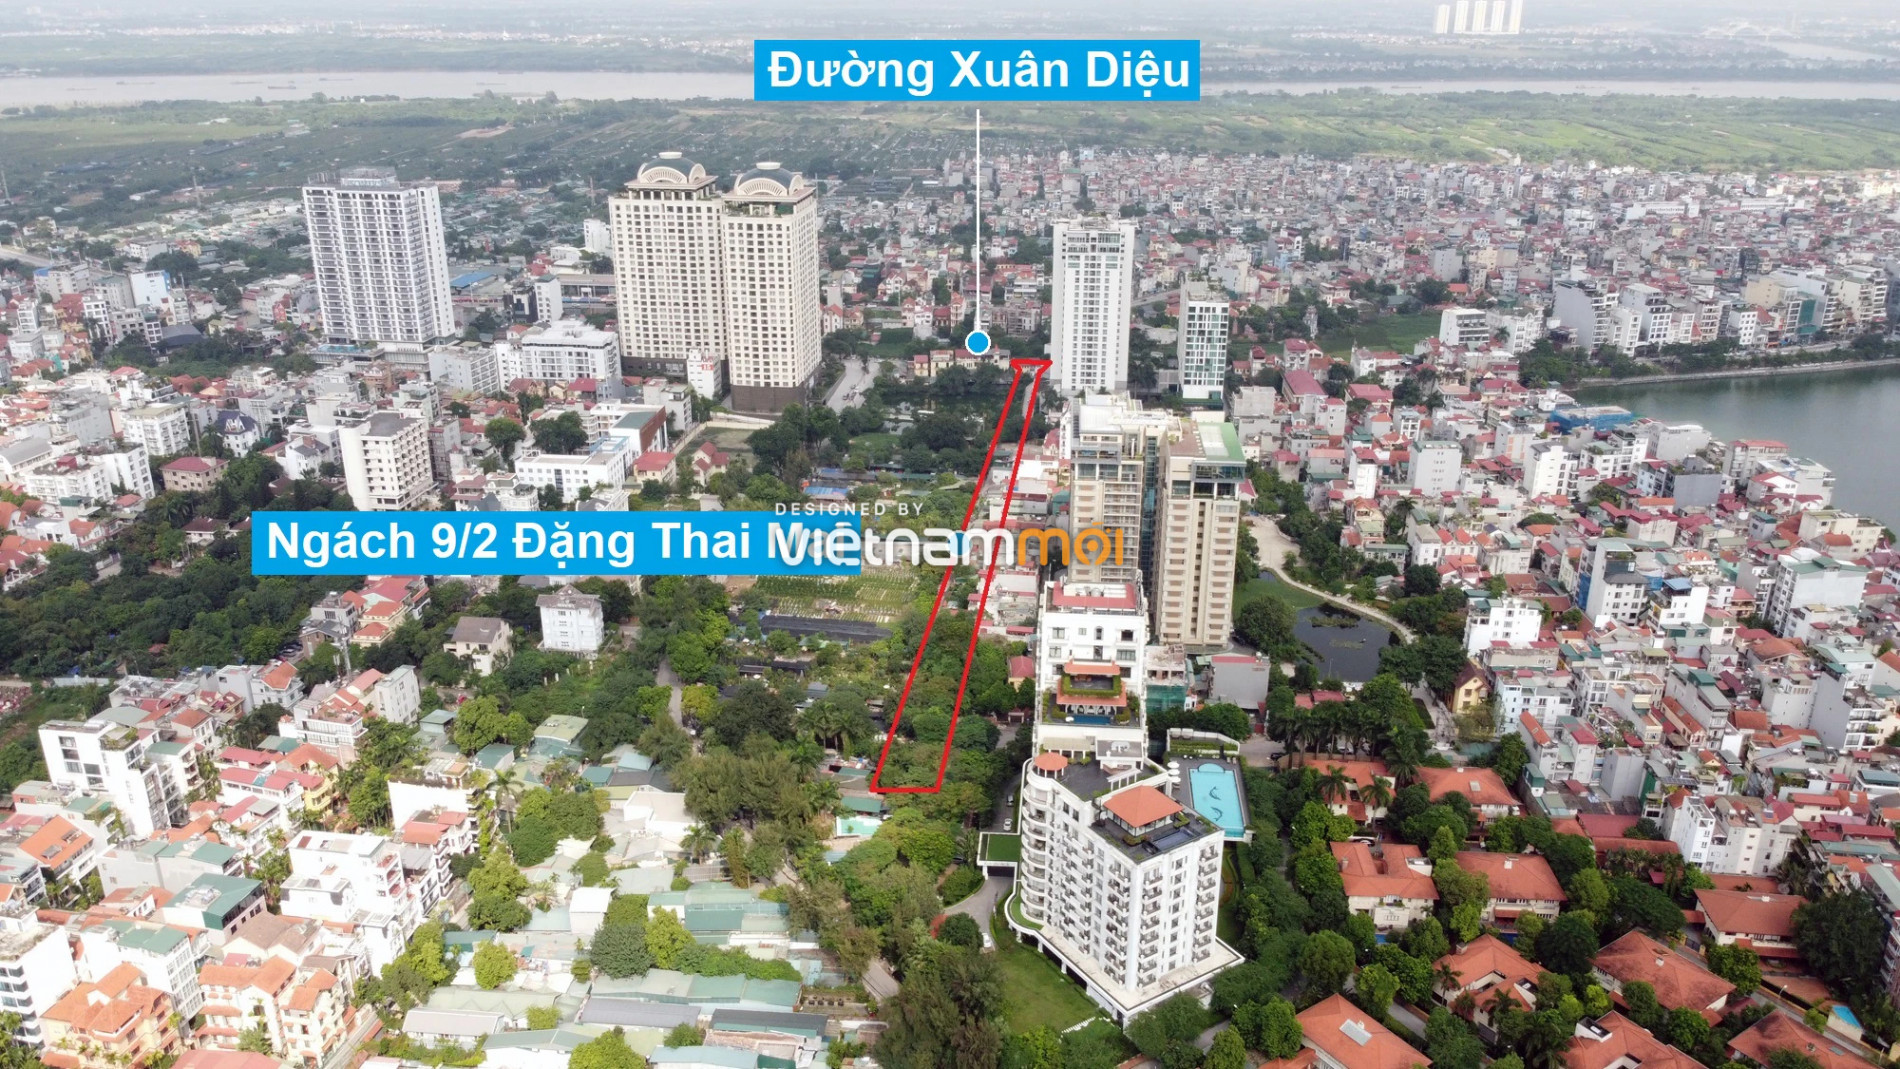 Những khu đất sắp thu hồi để mở đường ở quận Tây Hồ, Hà Nội (phần 6) - Ảnh 6.